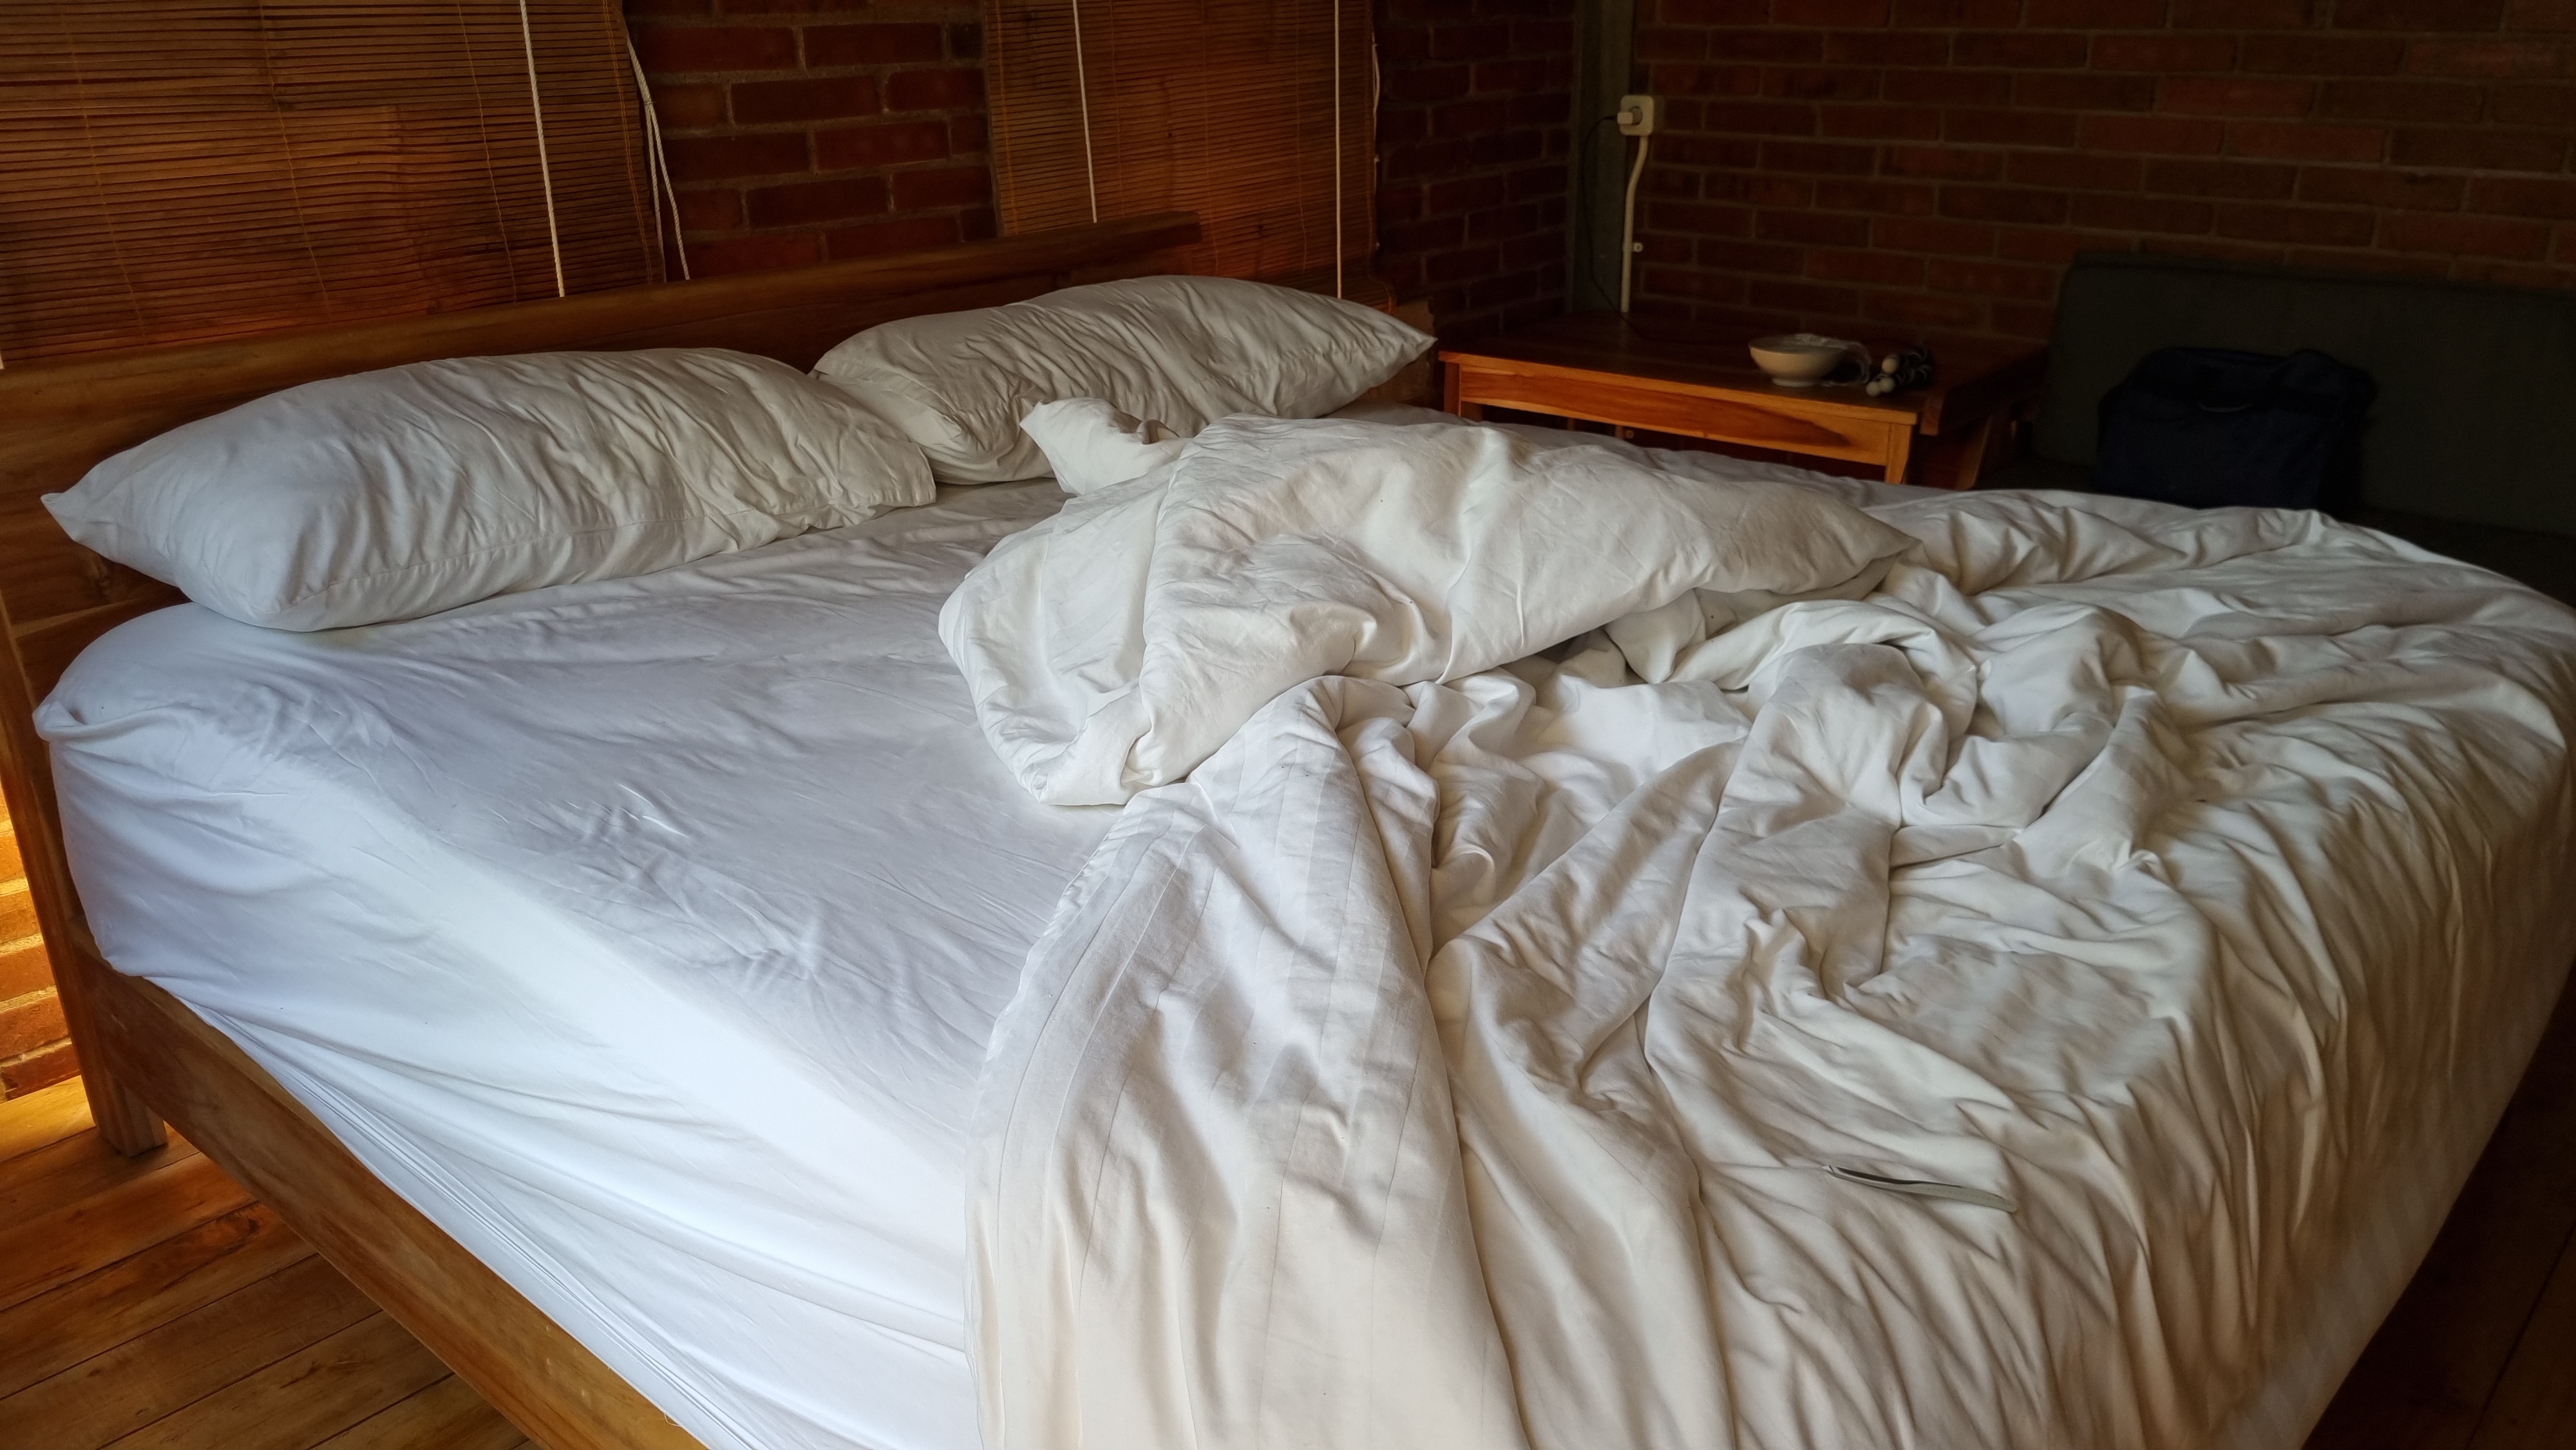 Un lit désordonné et défait | Source : Shutterstock